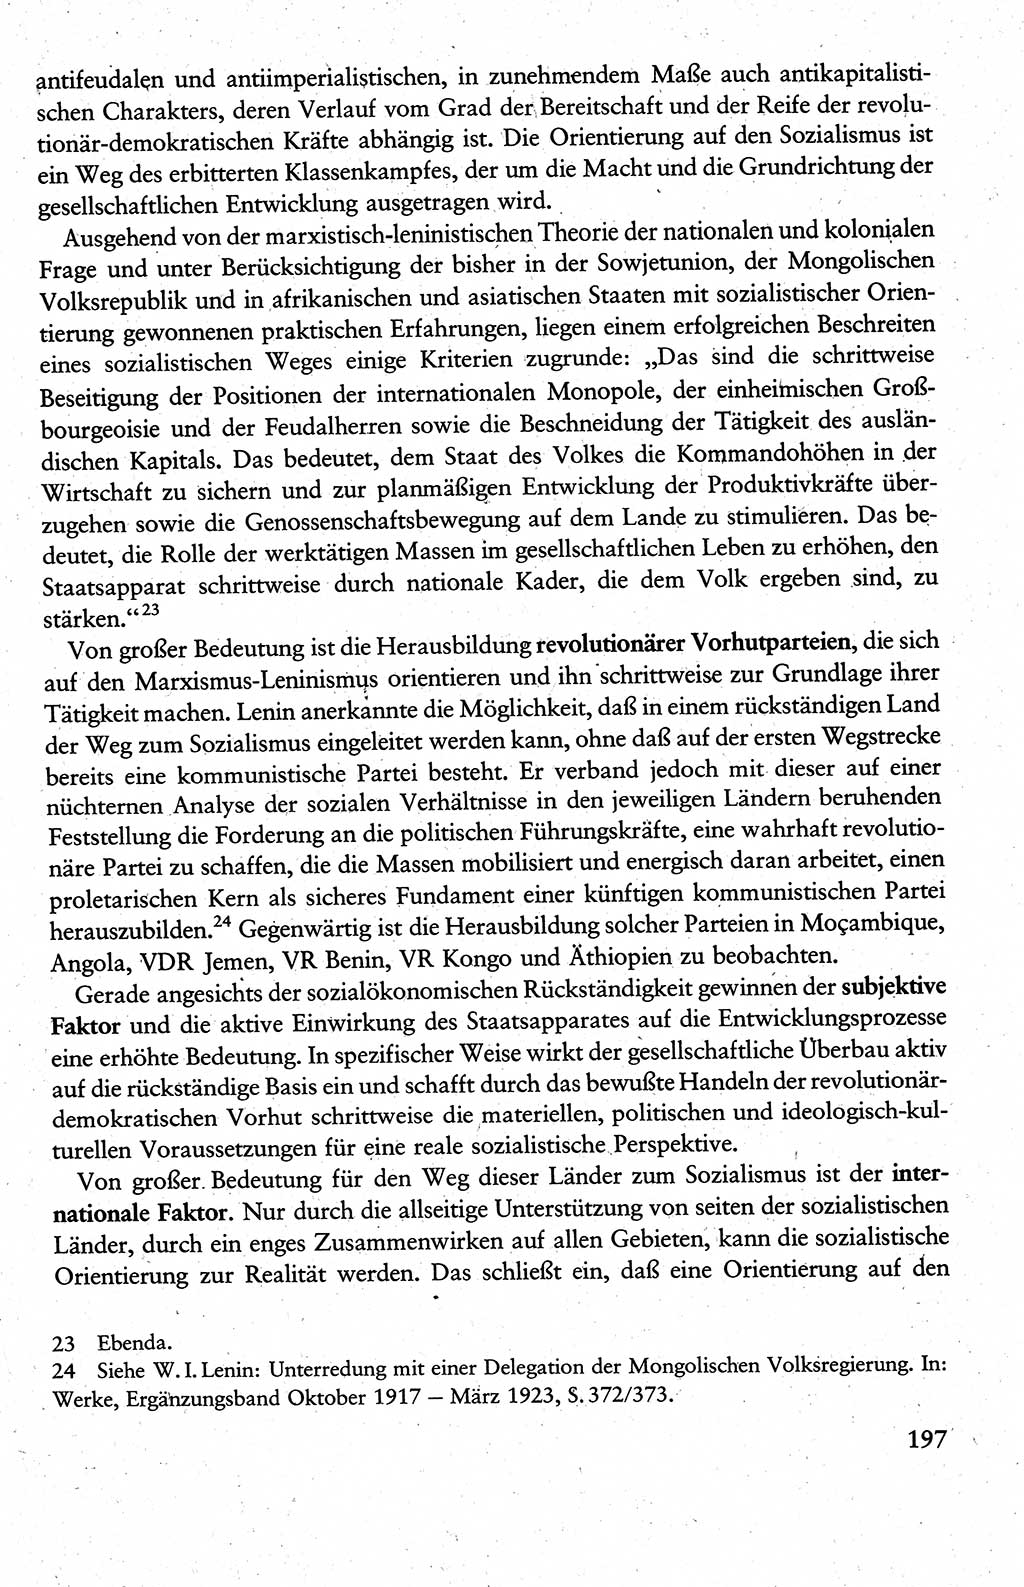 Wissenschaftlicher Kommunismus [Deutsche Demokratische Republik (DDR)], Lehrbuch für das marxistisch-leninistische Grundlagenstudium 1983, Seite 197 (Wiss. Komm. DDR Lb. 1983, S. 197)